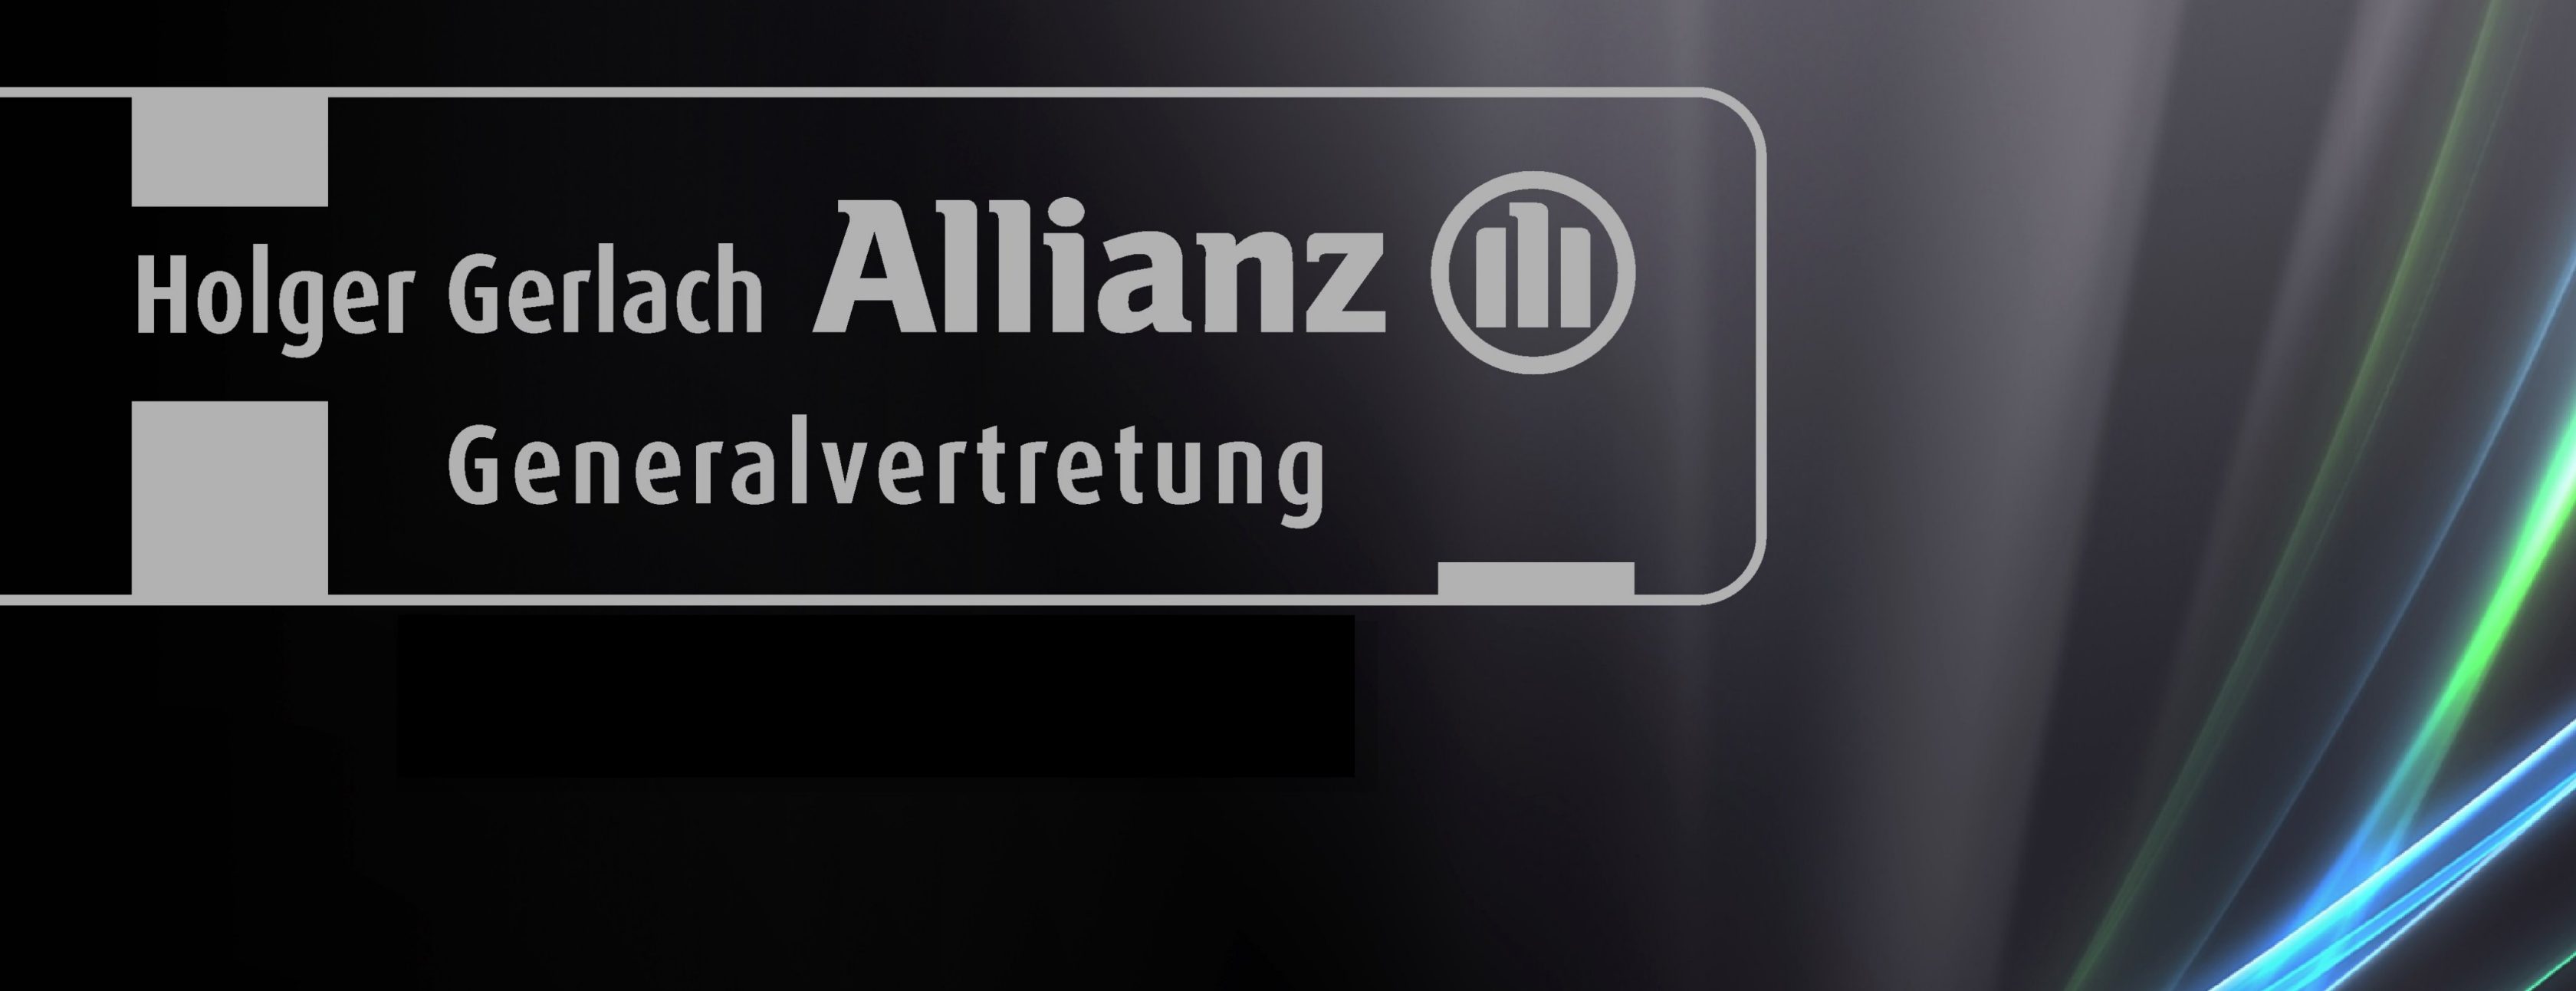 Allianz Versicherung Holger Gerlach e.K. Heilbad Heiligenstadt - Logo Allianz Holger Gerlach